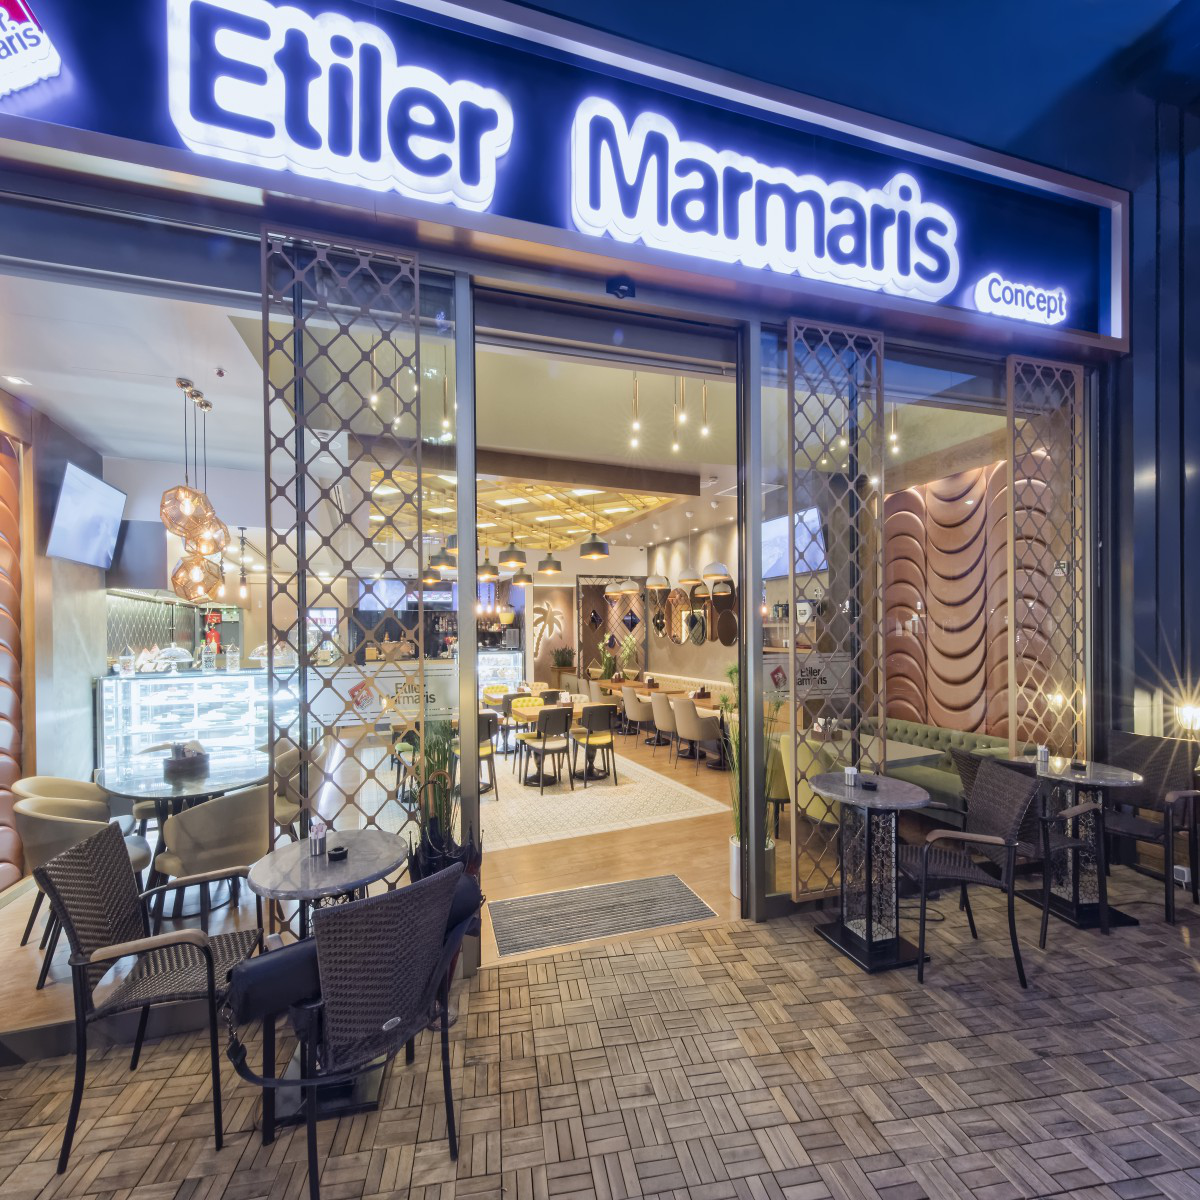 Etiler Marmaris Concept  Restaurant Project by Idea Architecture